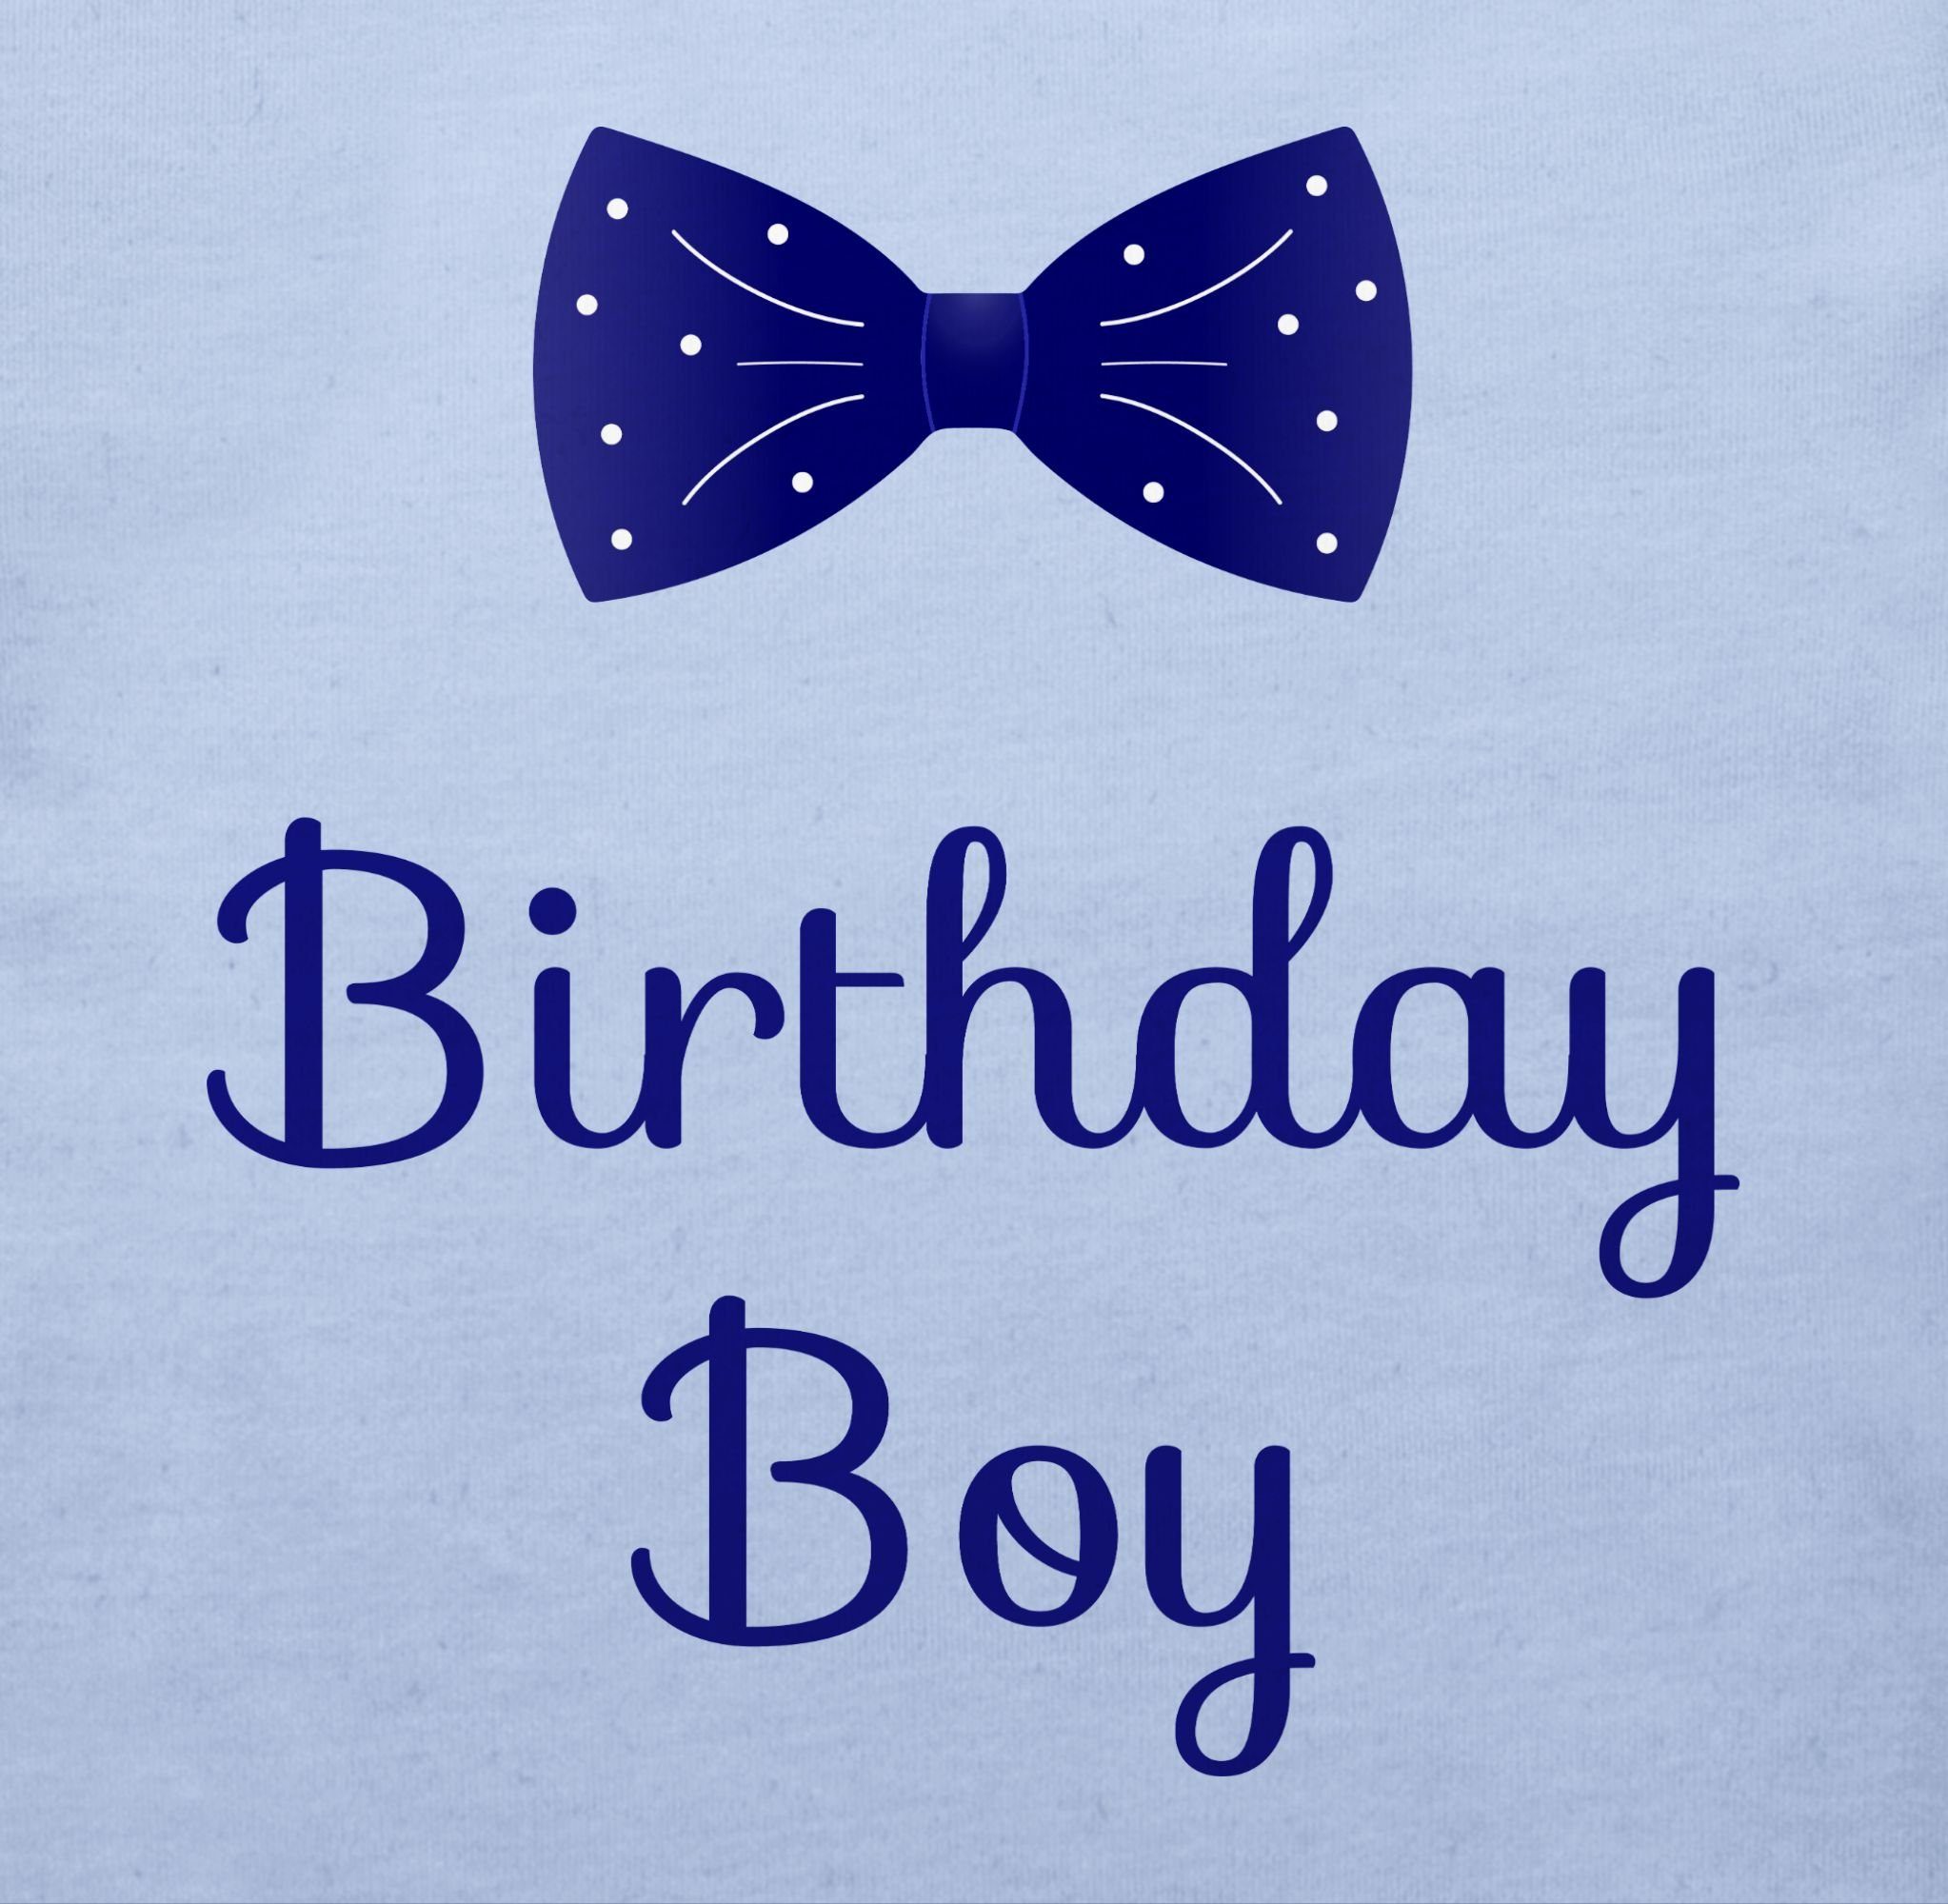 Babyblau - Fliege Geburtstag Birthday Geschenk Boy für Babys Shirtracer T-Shirt 2